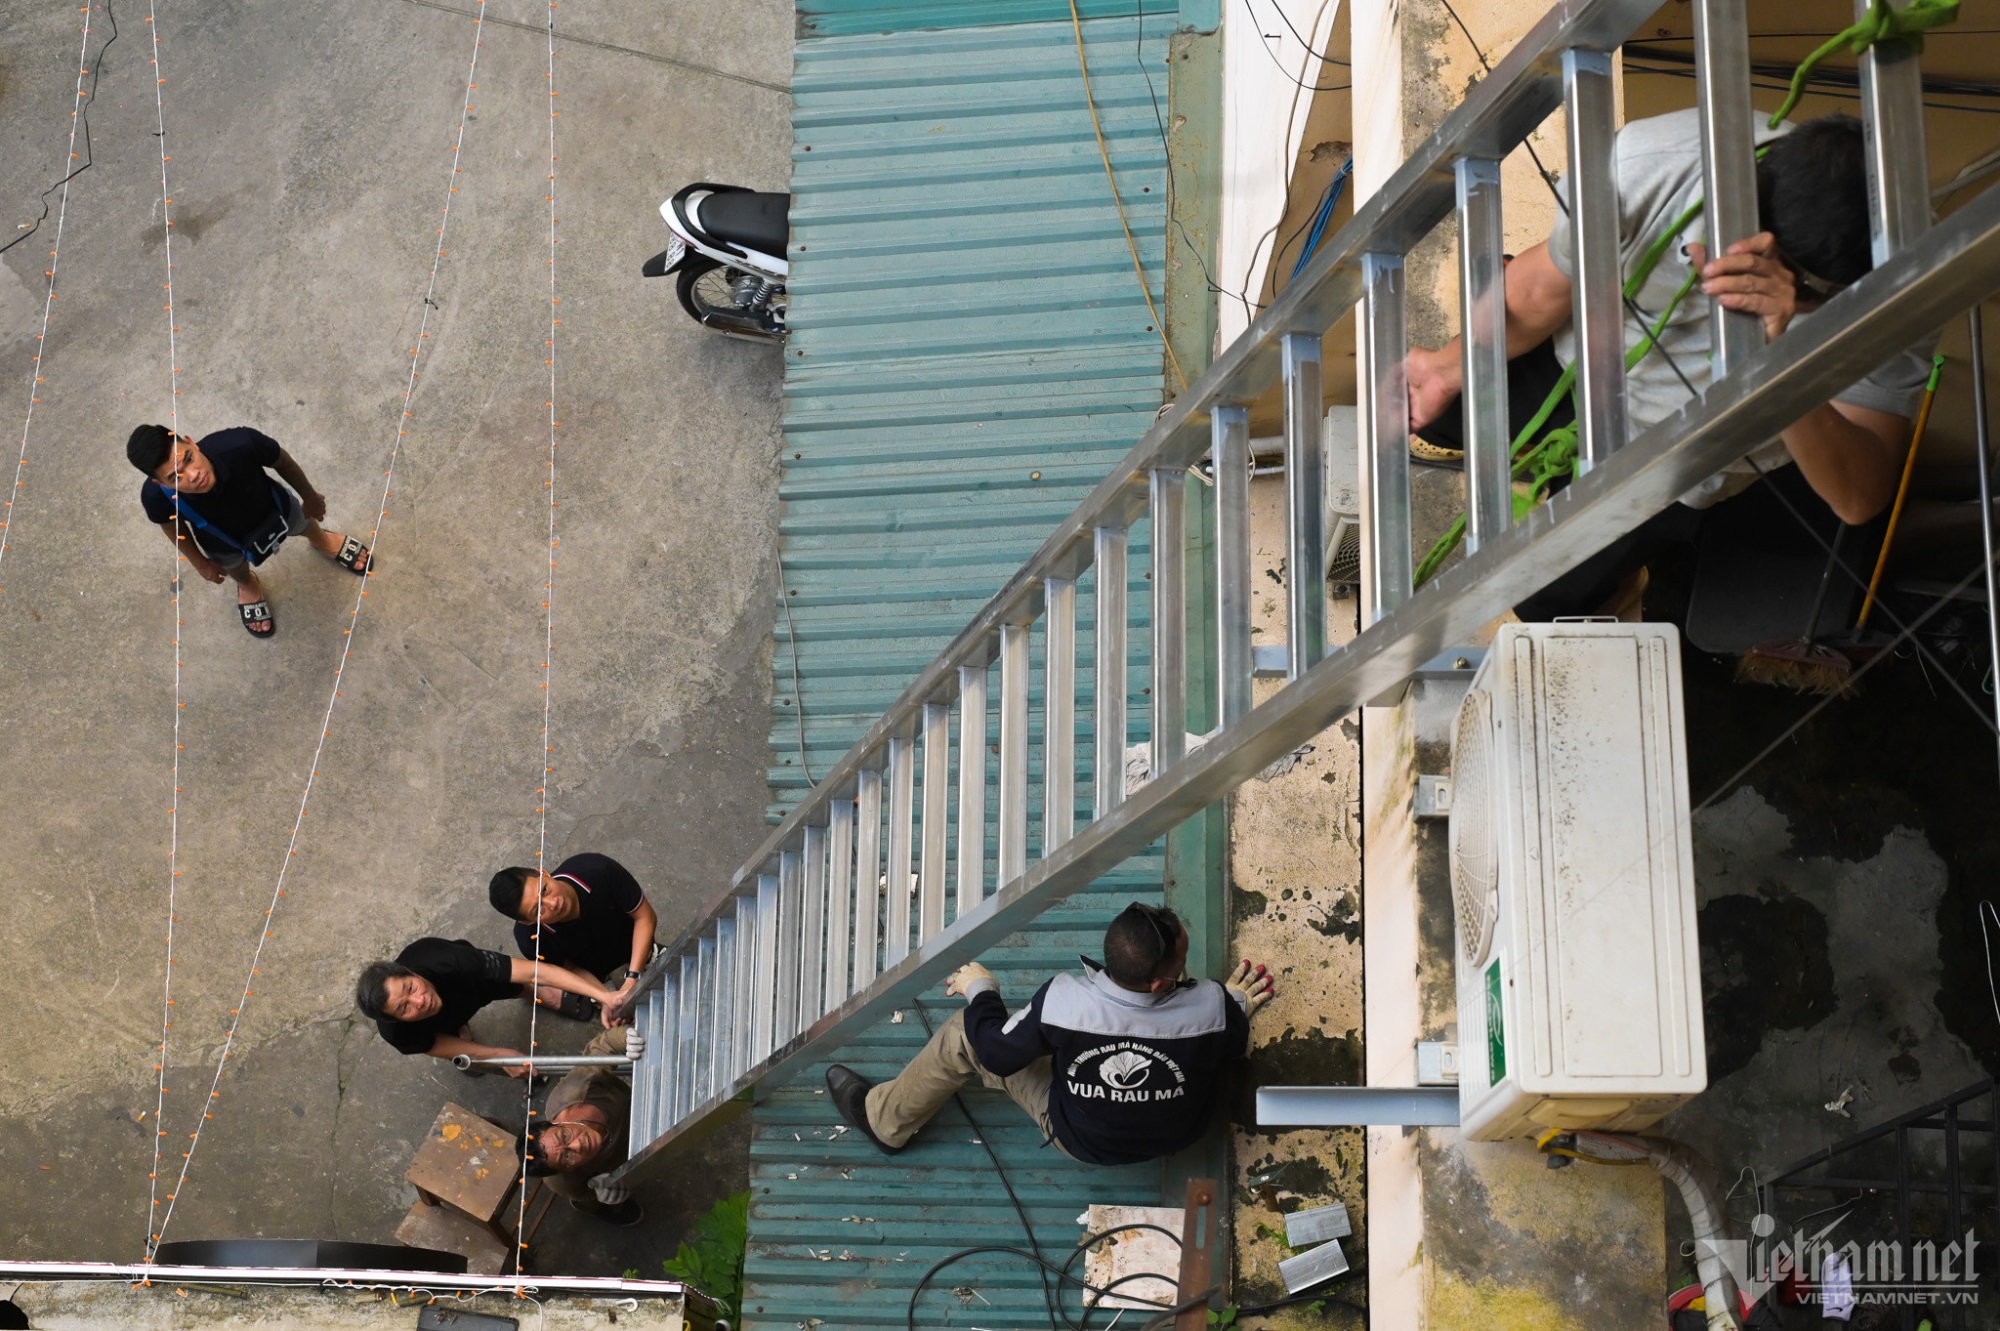 Sau vụ cháy chung cư mini ở Hà Nội, nhiều chủ nhà rục rịch lắp thang thoát hiểm: 'Xây nhanh - làm vội' liệu có an toàn? - Ảnh 1